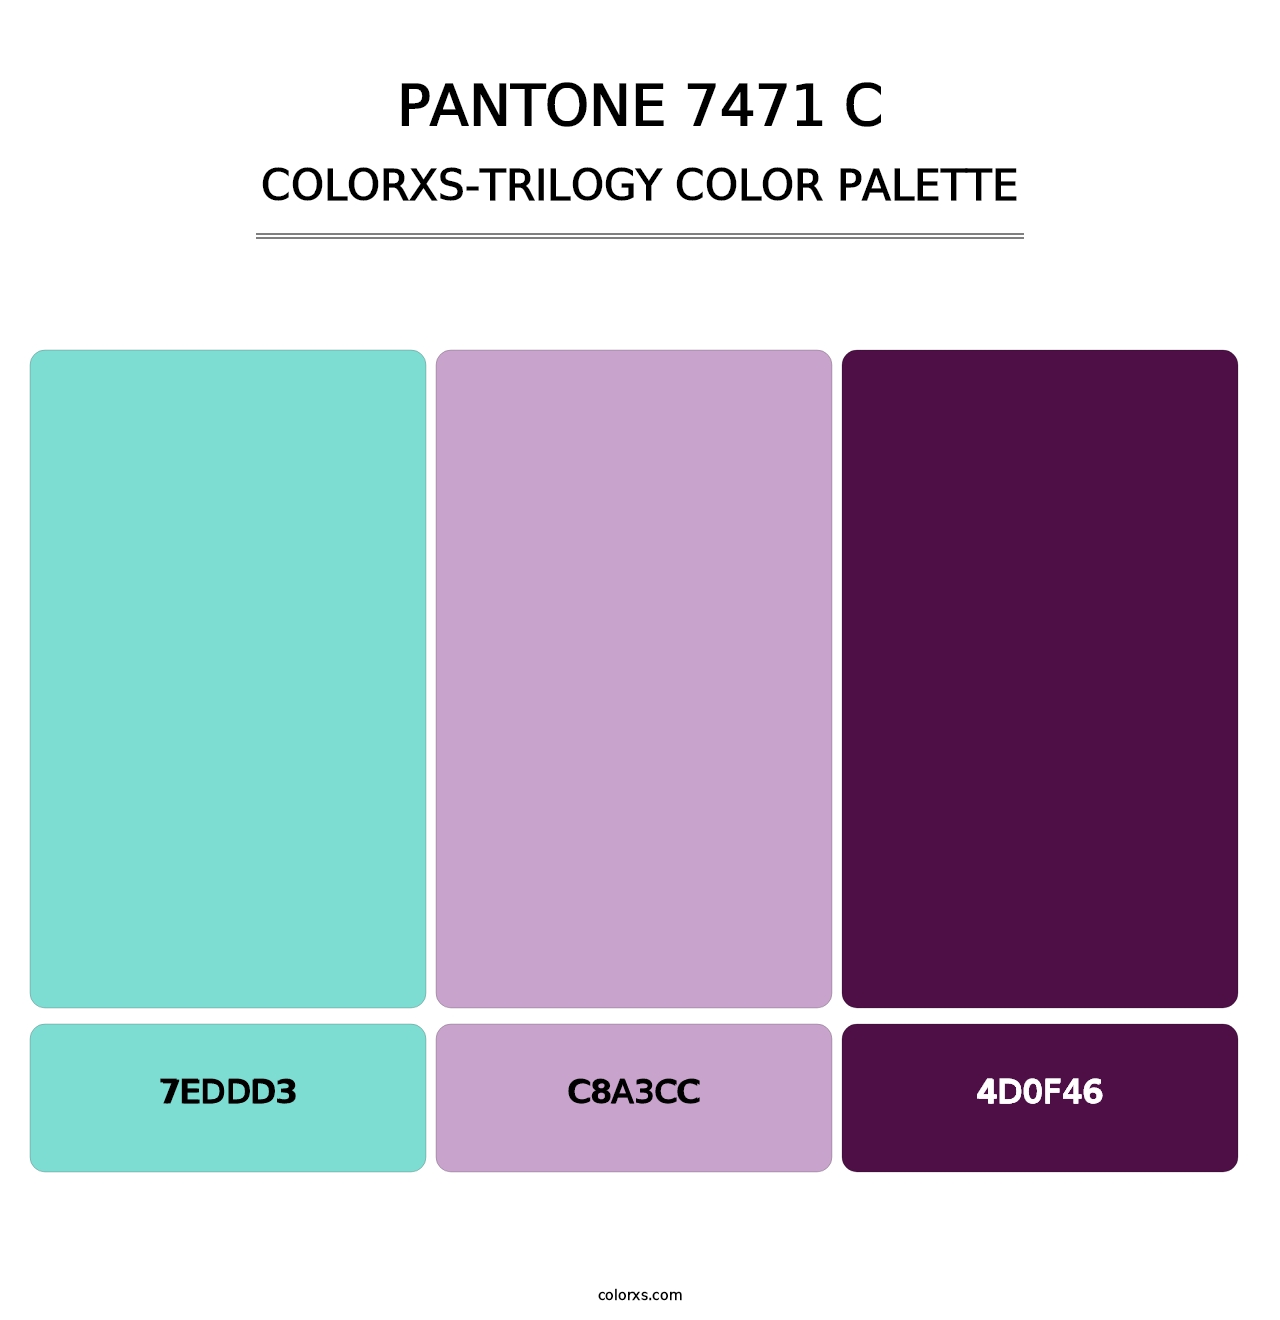 PANTONE 7471 C - Colorxs Trilogy Palette